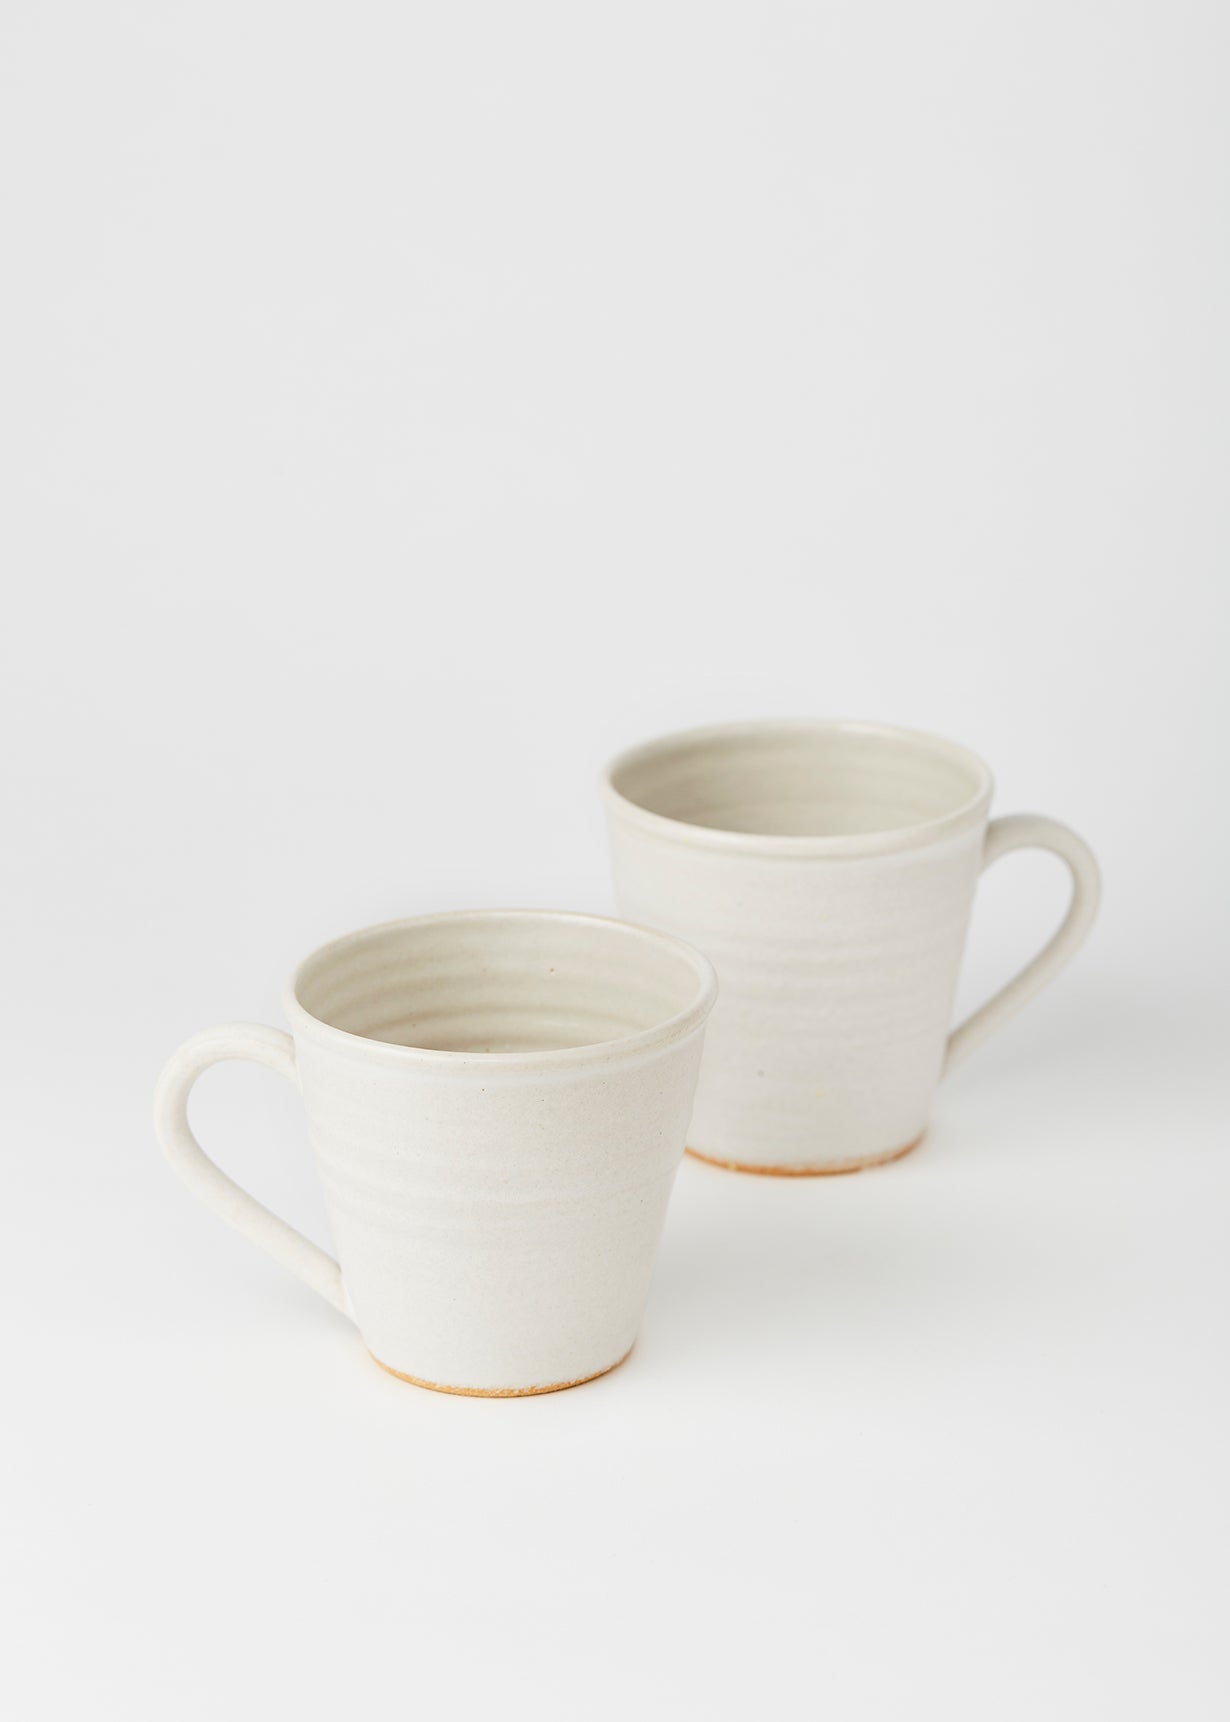 Snow Ceramic Cup